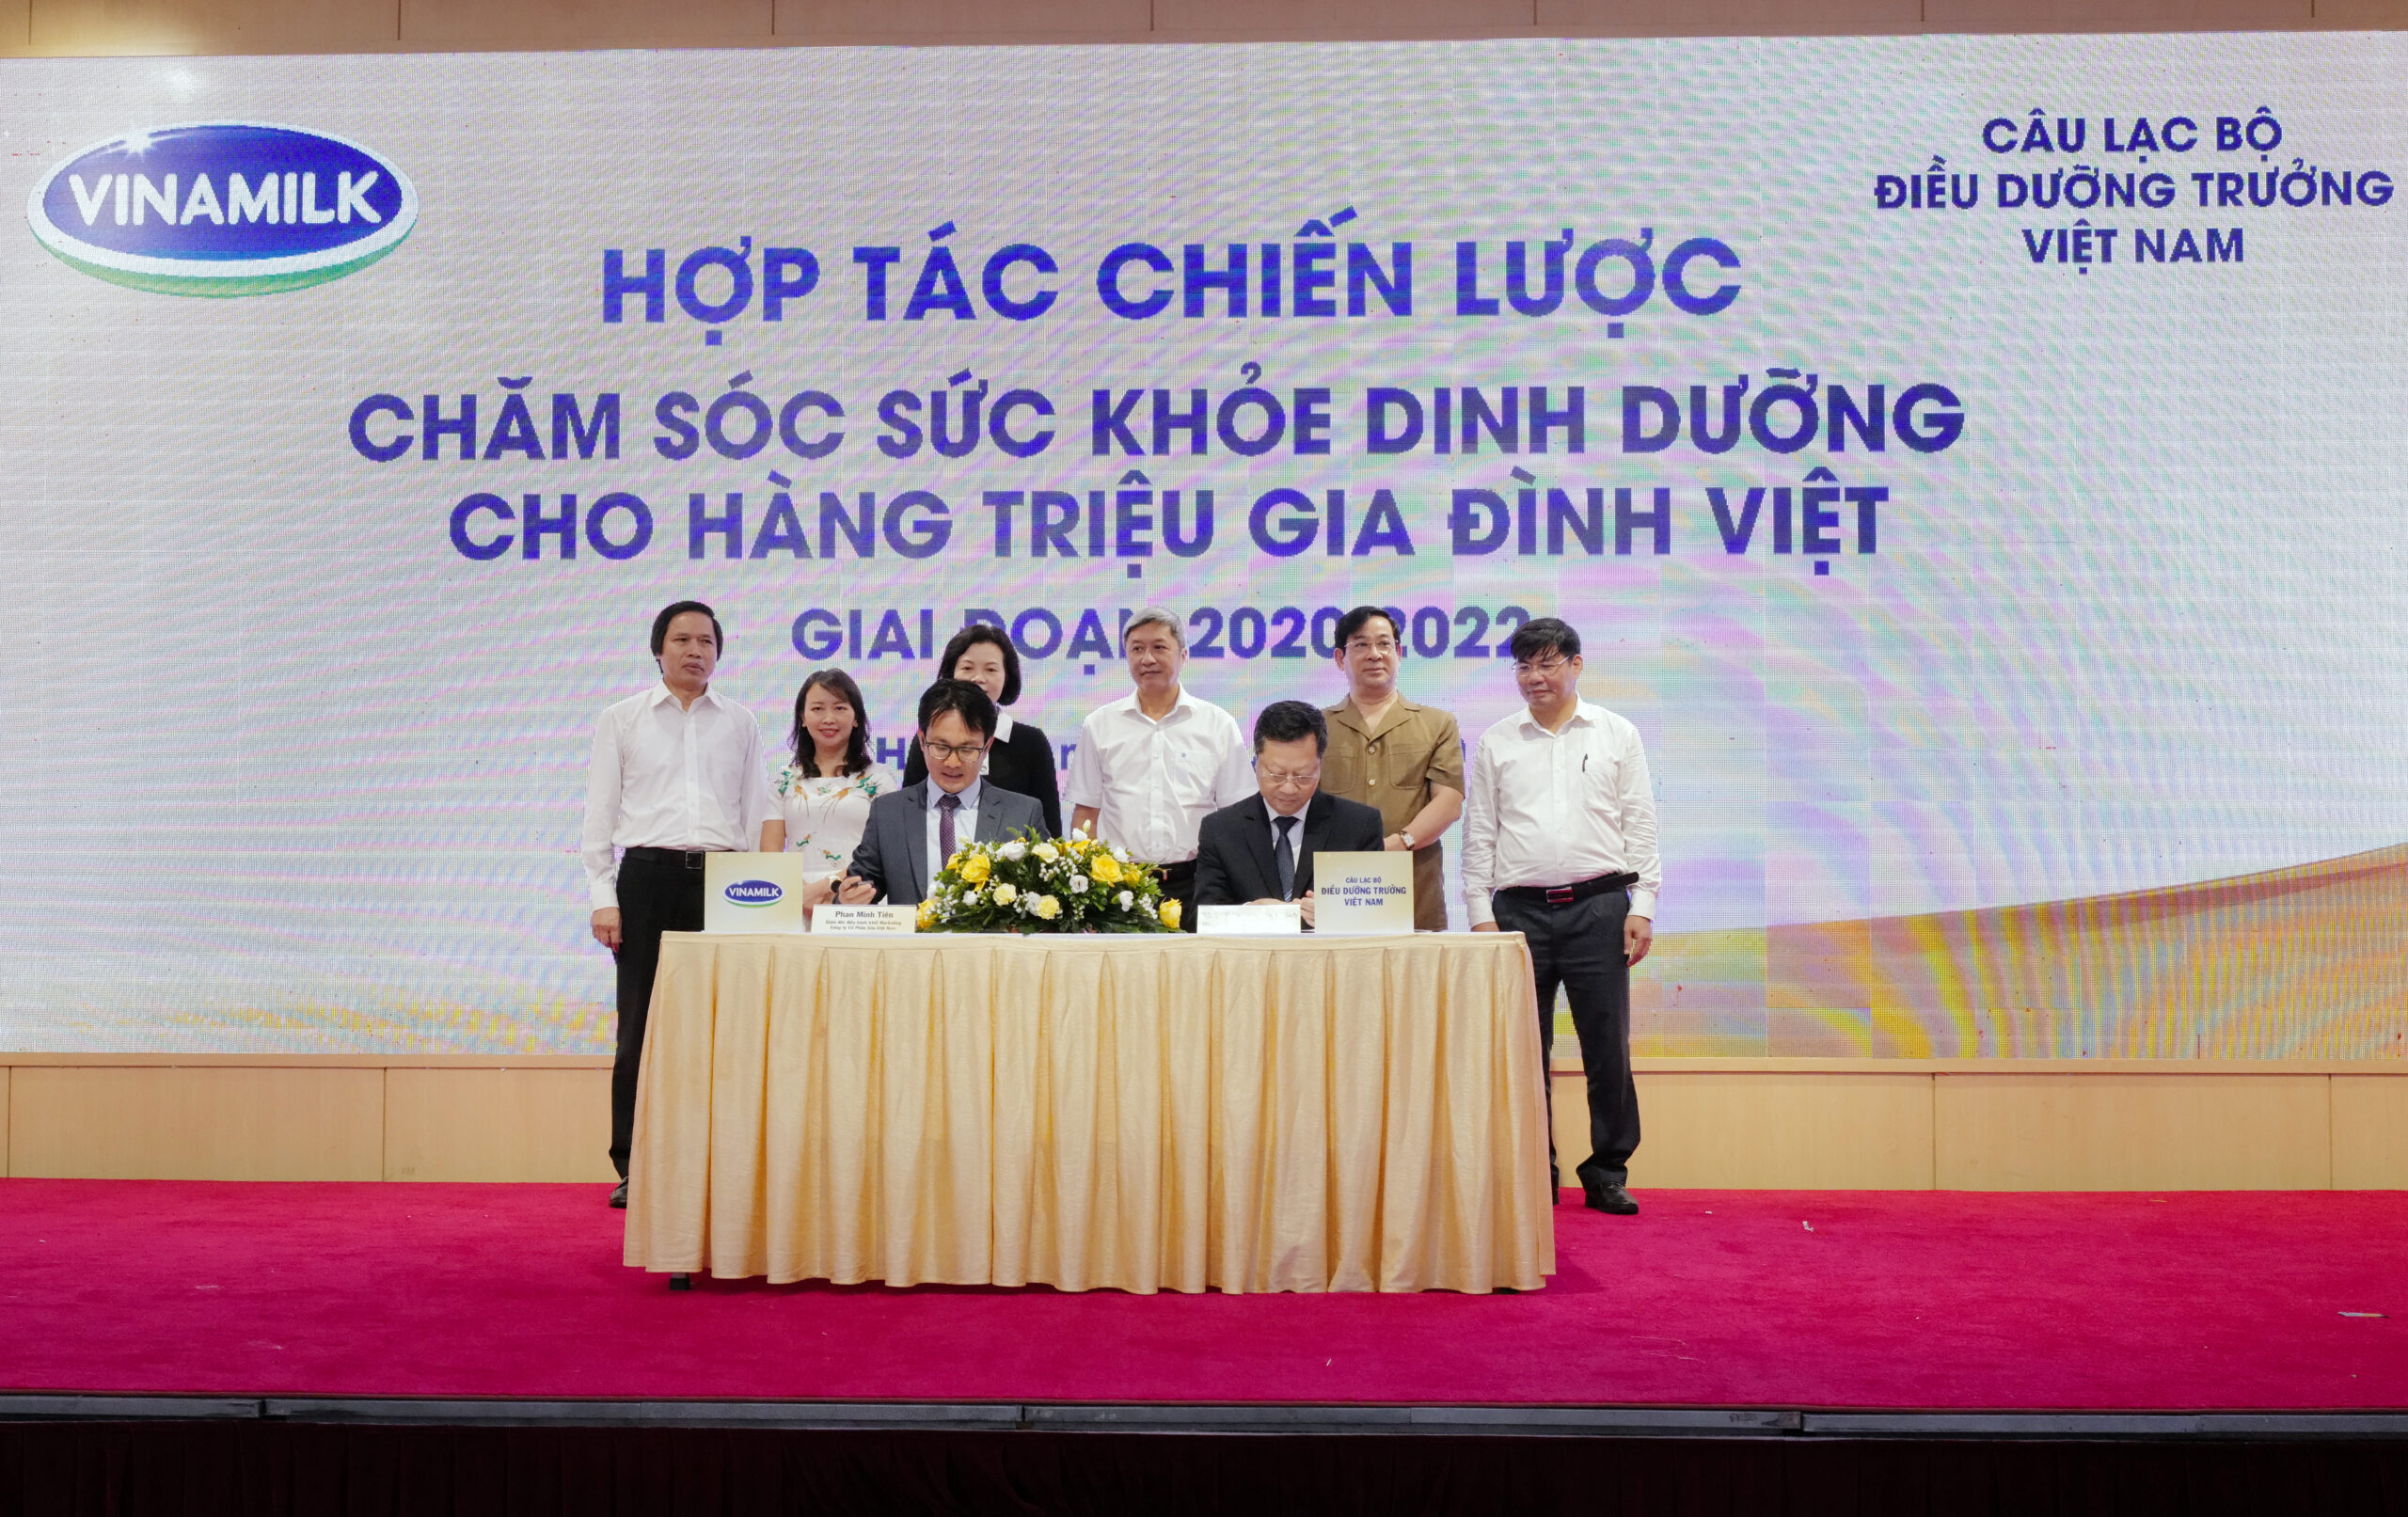 Ông Phan Minh Tiên (bên trái) và ông Hoàng Văn Thành đại diện ký kết hợp tác chiến lược giữa Vinamilk và CLB Điều dưỡng trưởng Việt Nam giai đoạn 2020-2022.